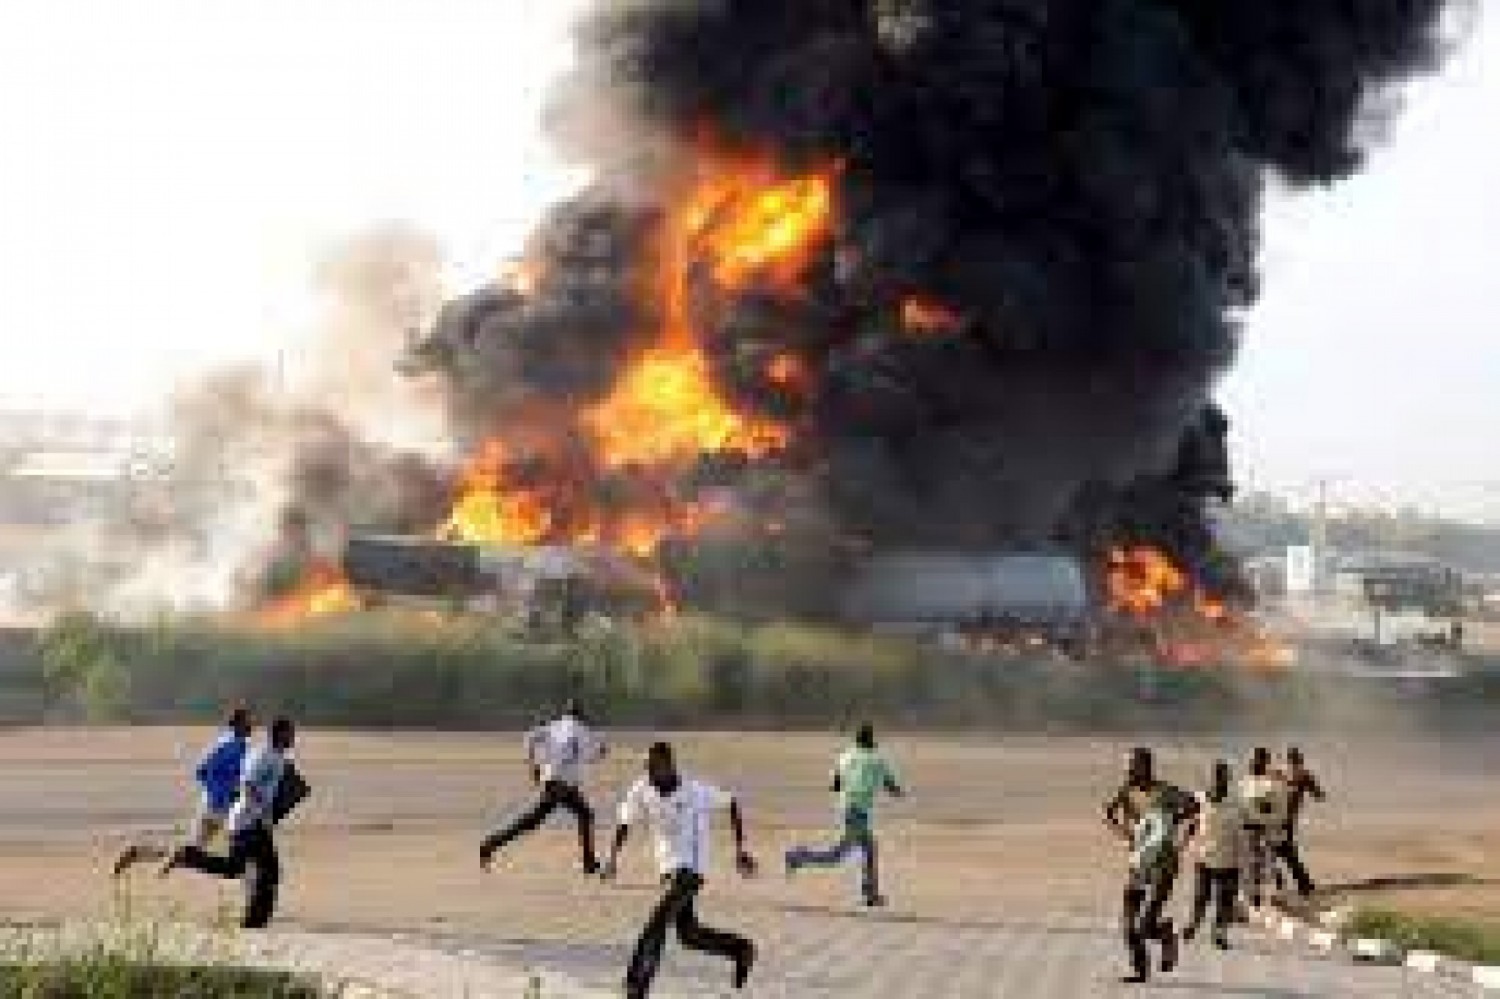 Nigeria : L'explosion d'un camion citerne fait 17 morts au moins